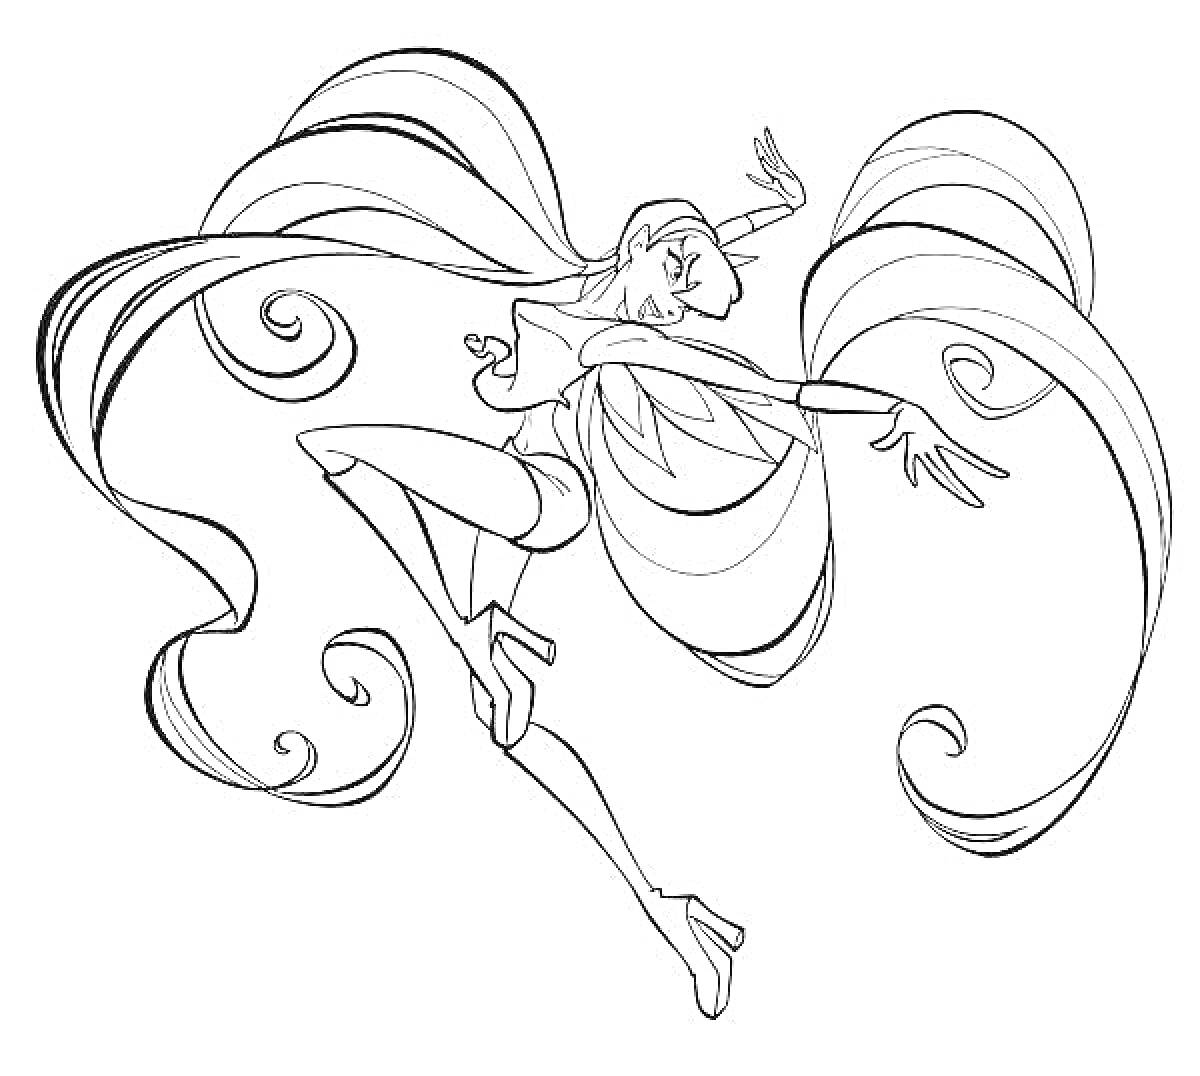 Раскраска Винкс Стелла с длинными развевающимися волосами и в кроссовках